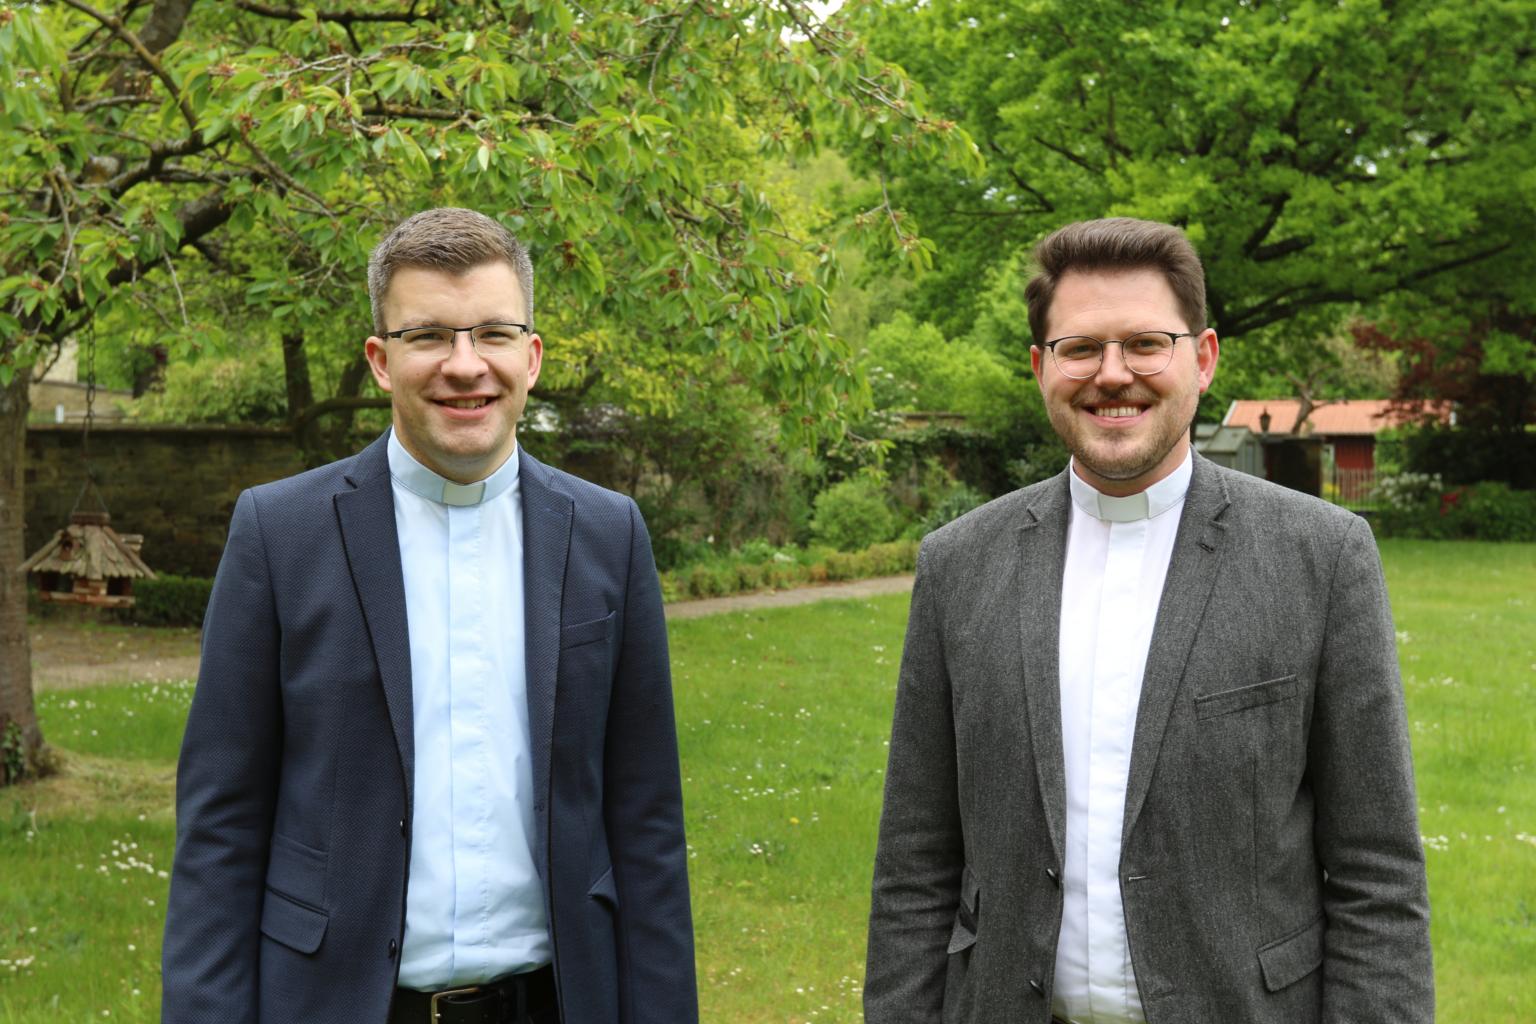 Andre Vogelsberg und Markus Terporten (c) Bistum Osnabrück / Thomas Arzner